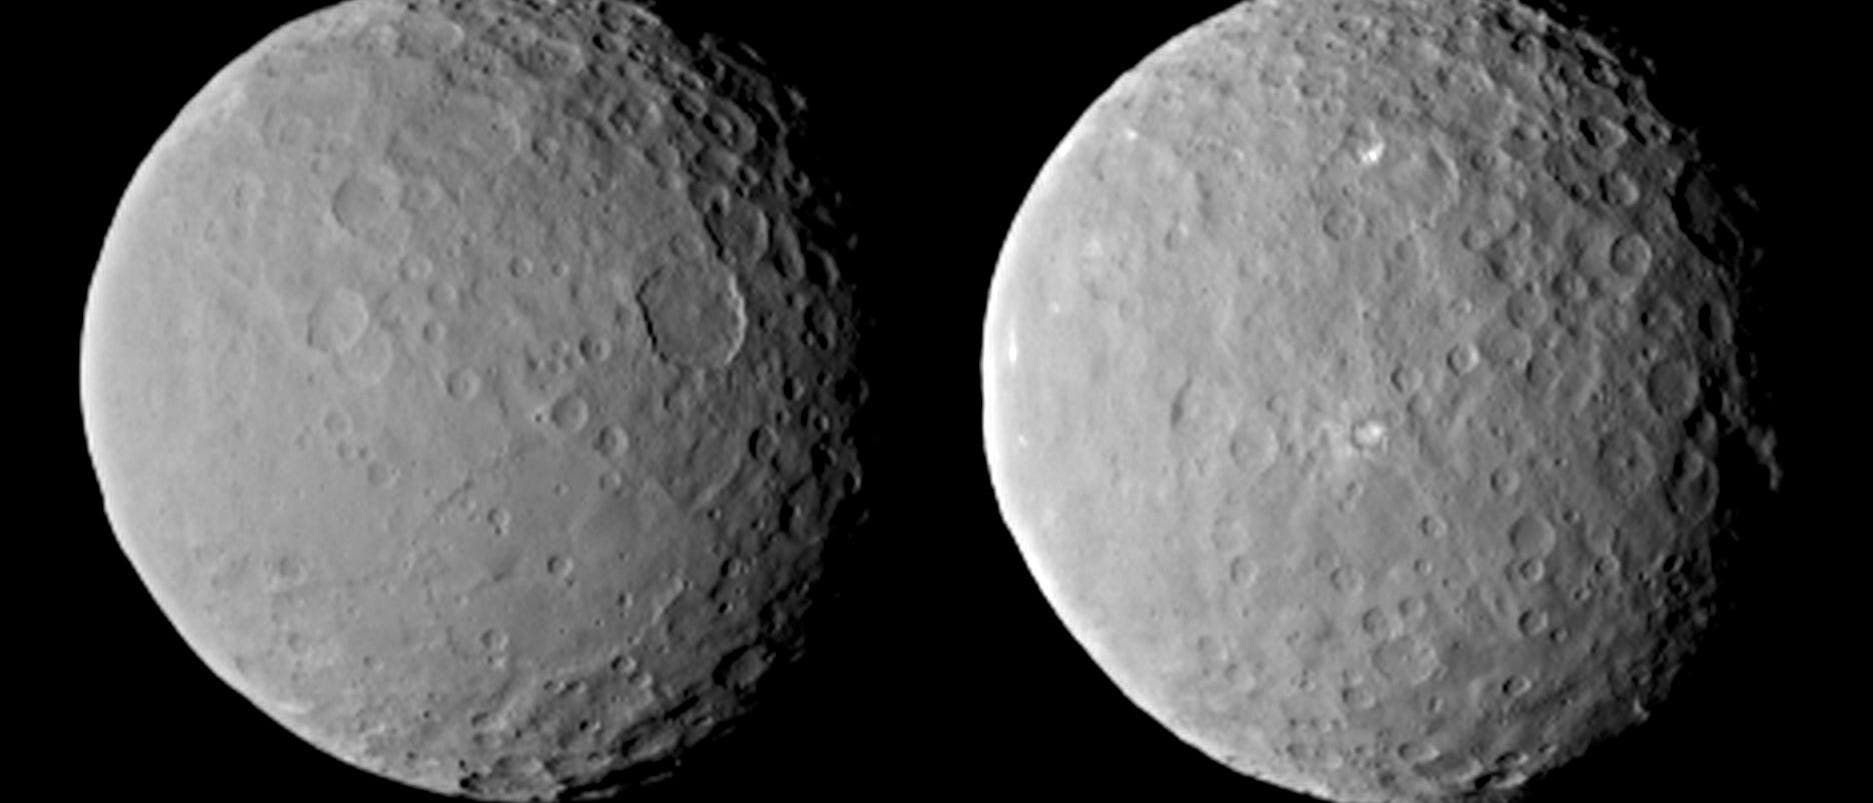 Zwergplanet Ceres am 19. Februar 2015 - I